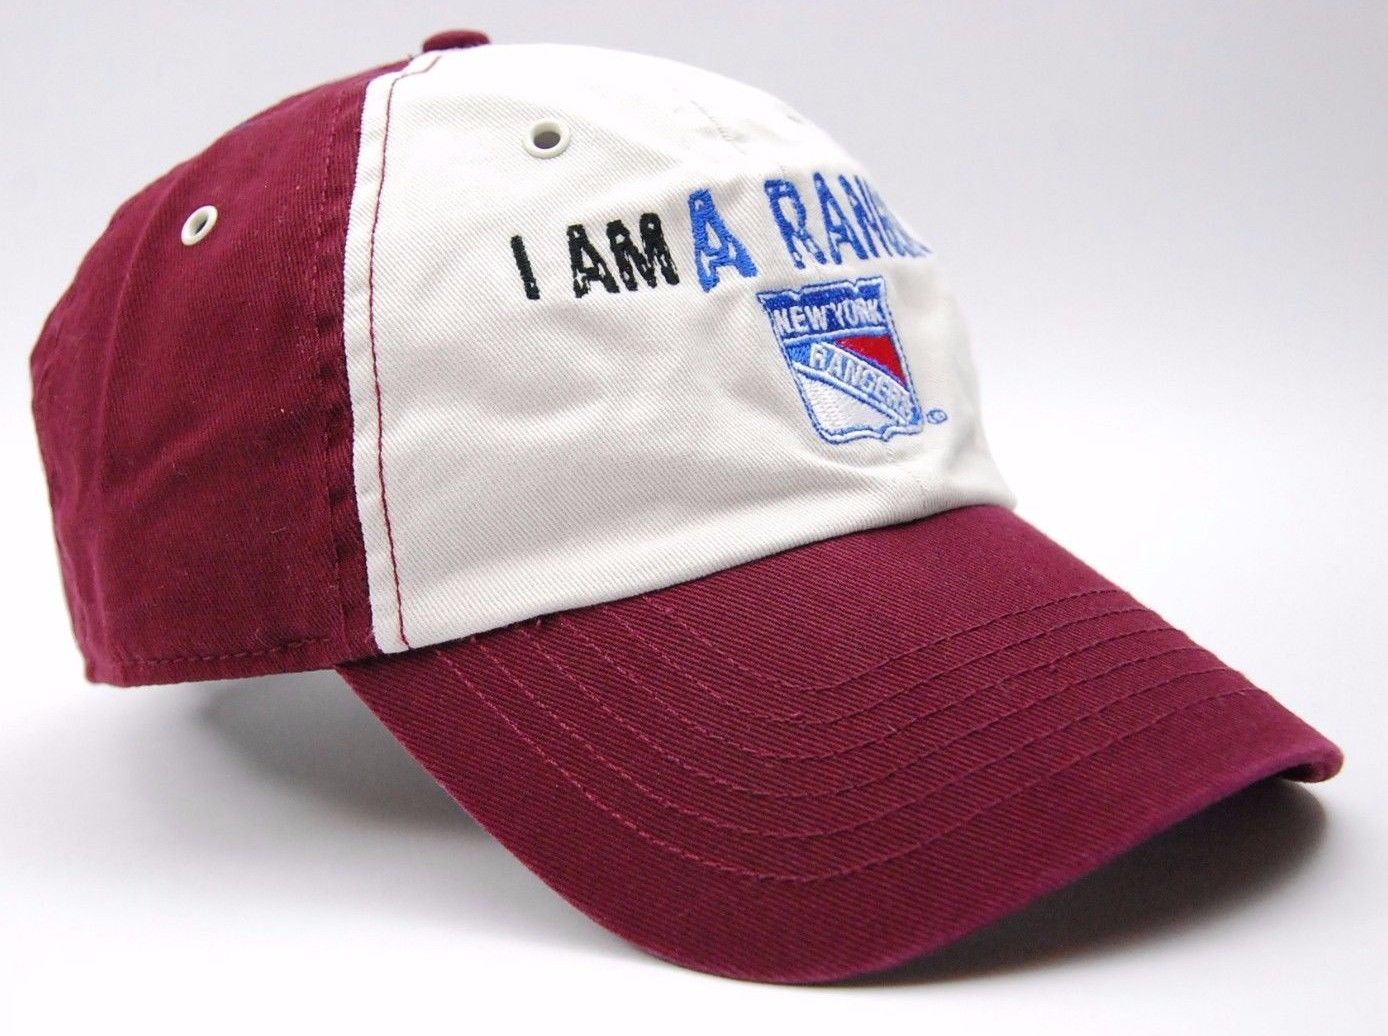 New York Rangers NHL Starter Vintage Adjustable Hat